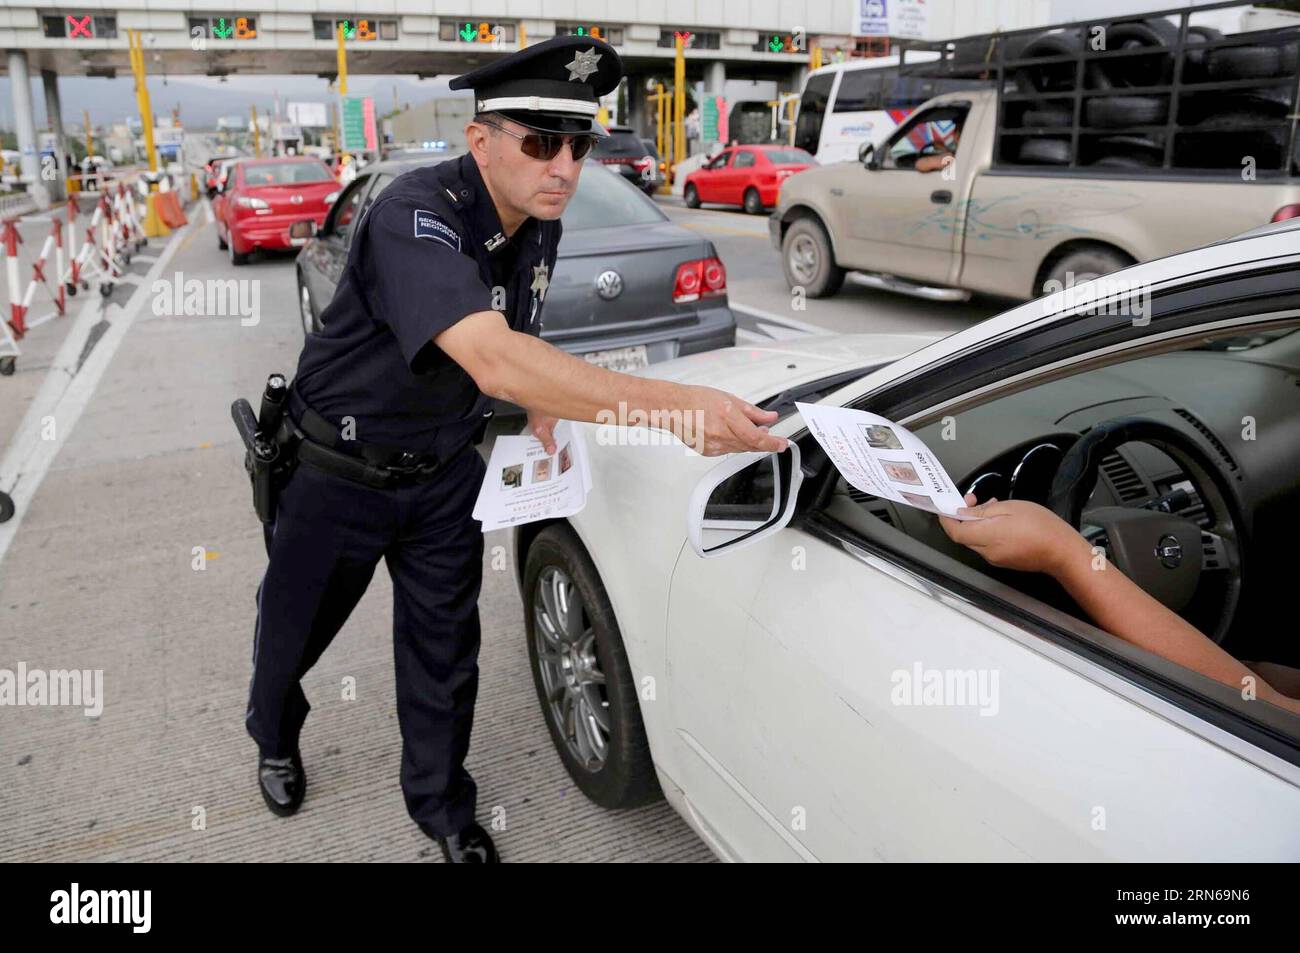 AKTUELLES ZEITGESCHEHEN Mexiko: Suche nach Joaquin El Chapo Guzman (150716) -- CHALCO, 16. Juli 2015 -- Bild bereitgestellt am 16. Juli 2015 von der Allgemeinen Kommunikationsleitung des mexikanischen Scretariats des Innern (), zeigt eine Polizei, die einem Fahrer ein Flugblatt über Mexikos Drogenlord Joaquin El Chapo Guzman an der Mautstelle von San Marcos auf dem Mexico-Puebla Highway in Chalco, Mexiko, aushändigt. In einem am Mittwoch veröffentlichten Bericht teilte die mit, dass sie 101 Revisionsfilter eingerichtet hat, die sich auf den Hauptstraßen und Bundesstraßen im ganzen Land befinden, und dass es eine Warnung bei Ai gibt Stockfoto